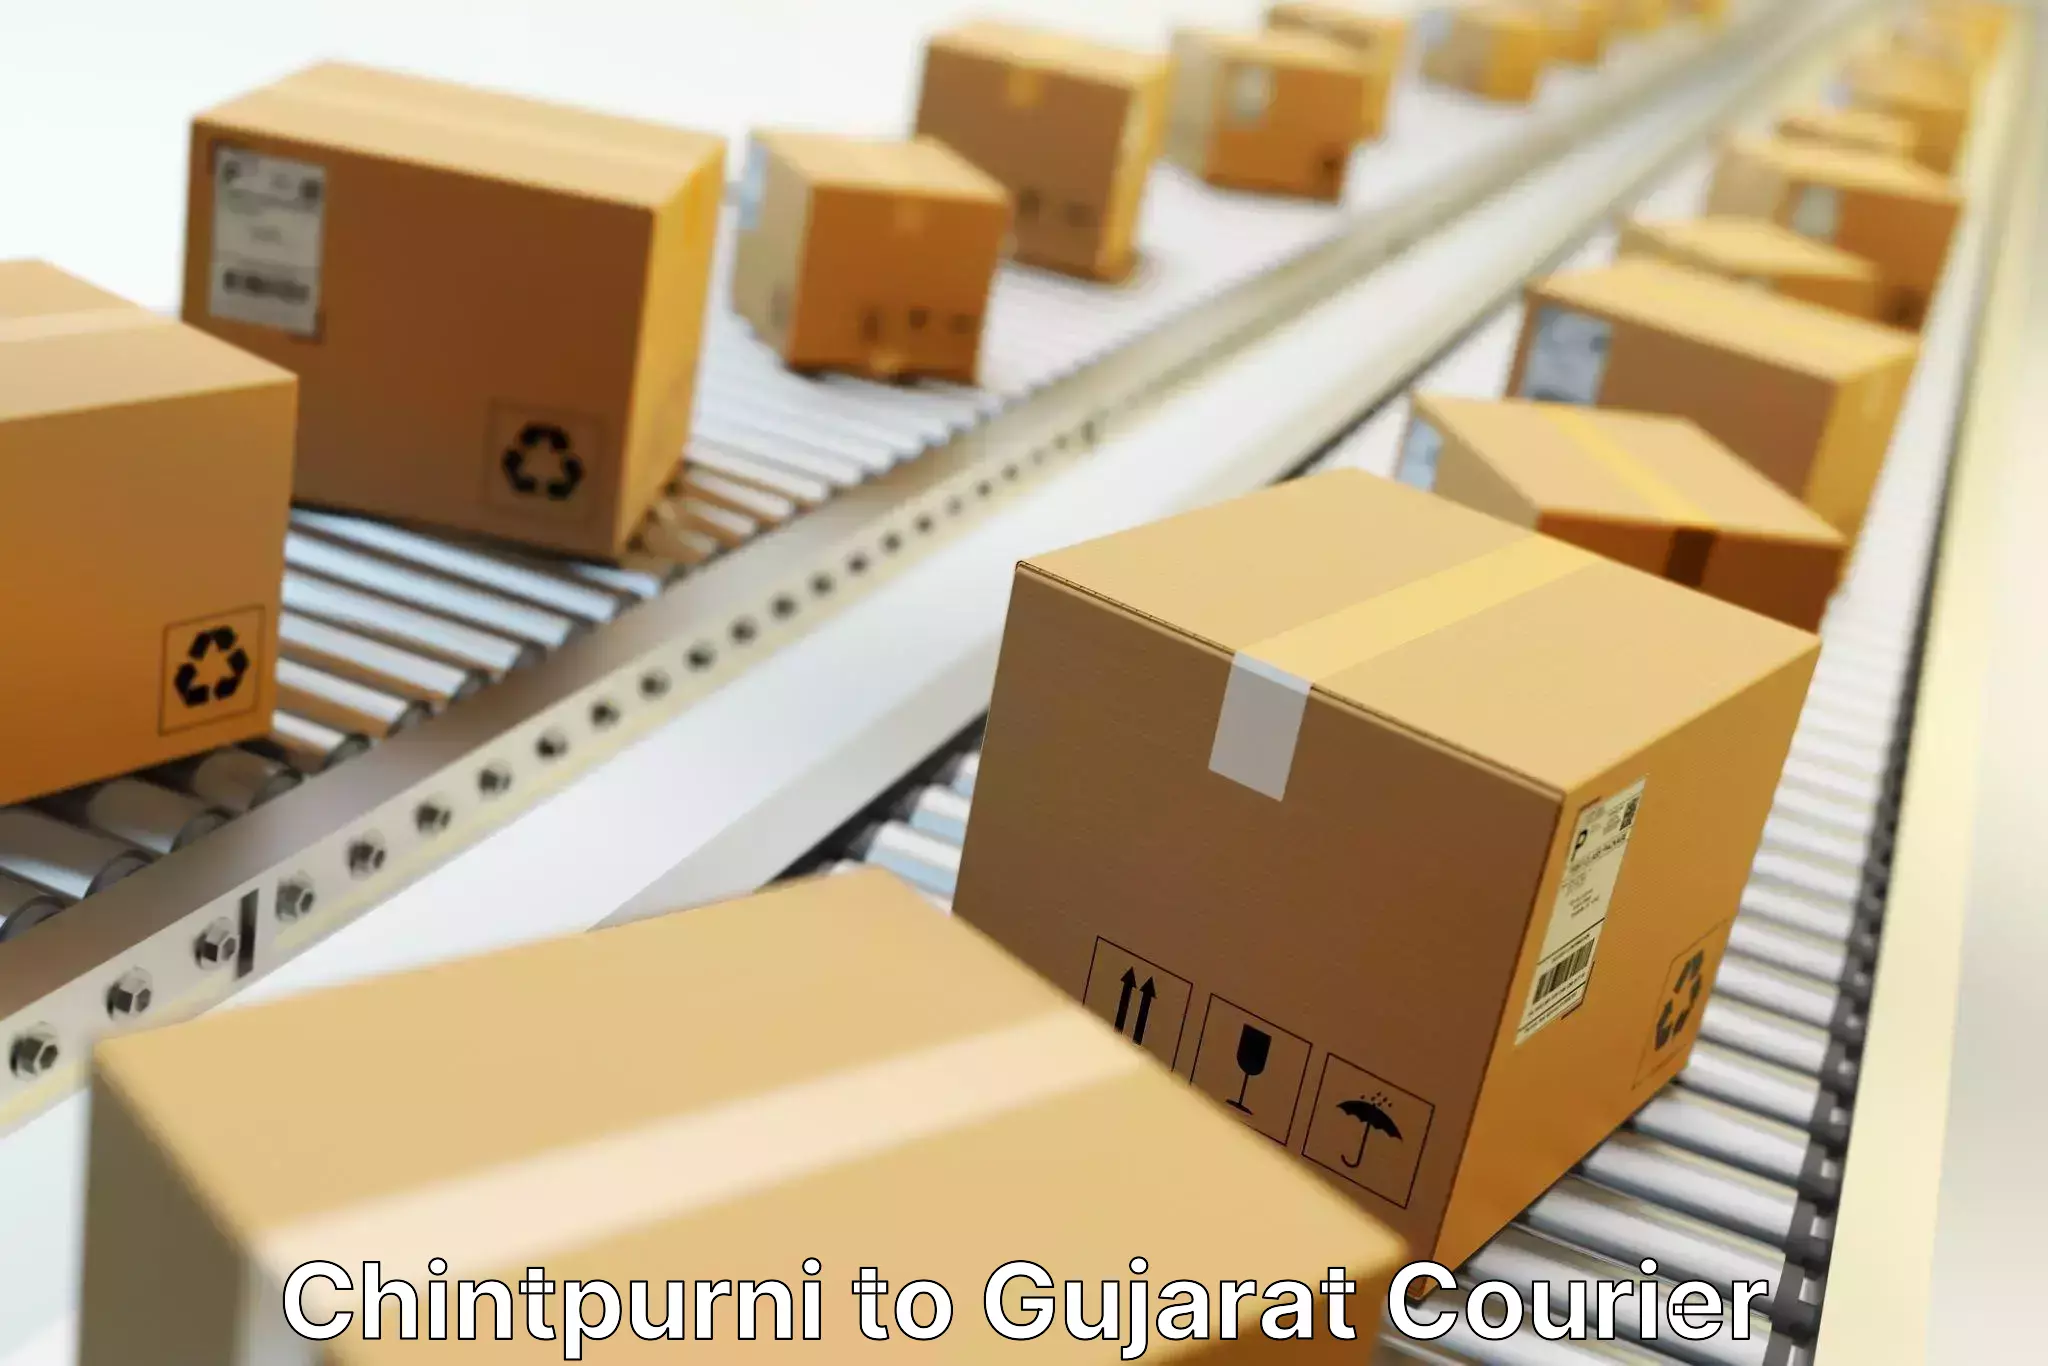 Package tracking Chintpurni to Gujarat